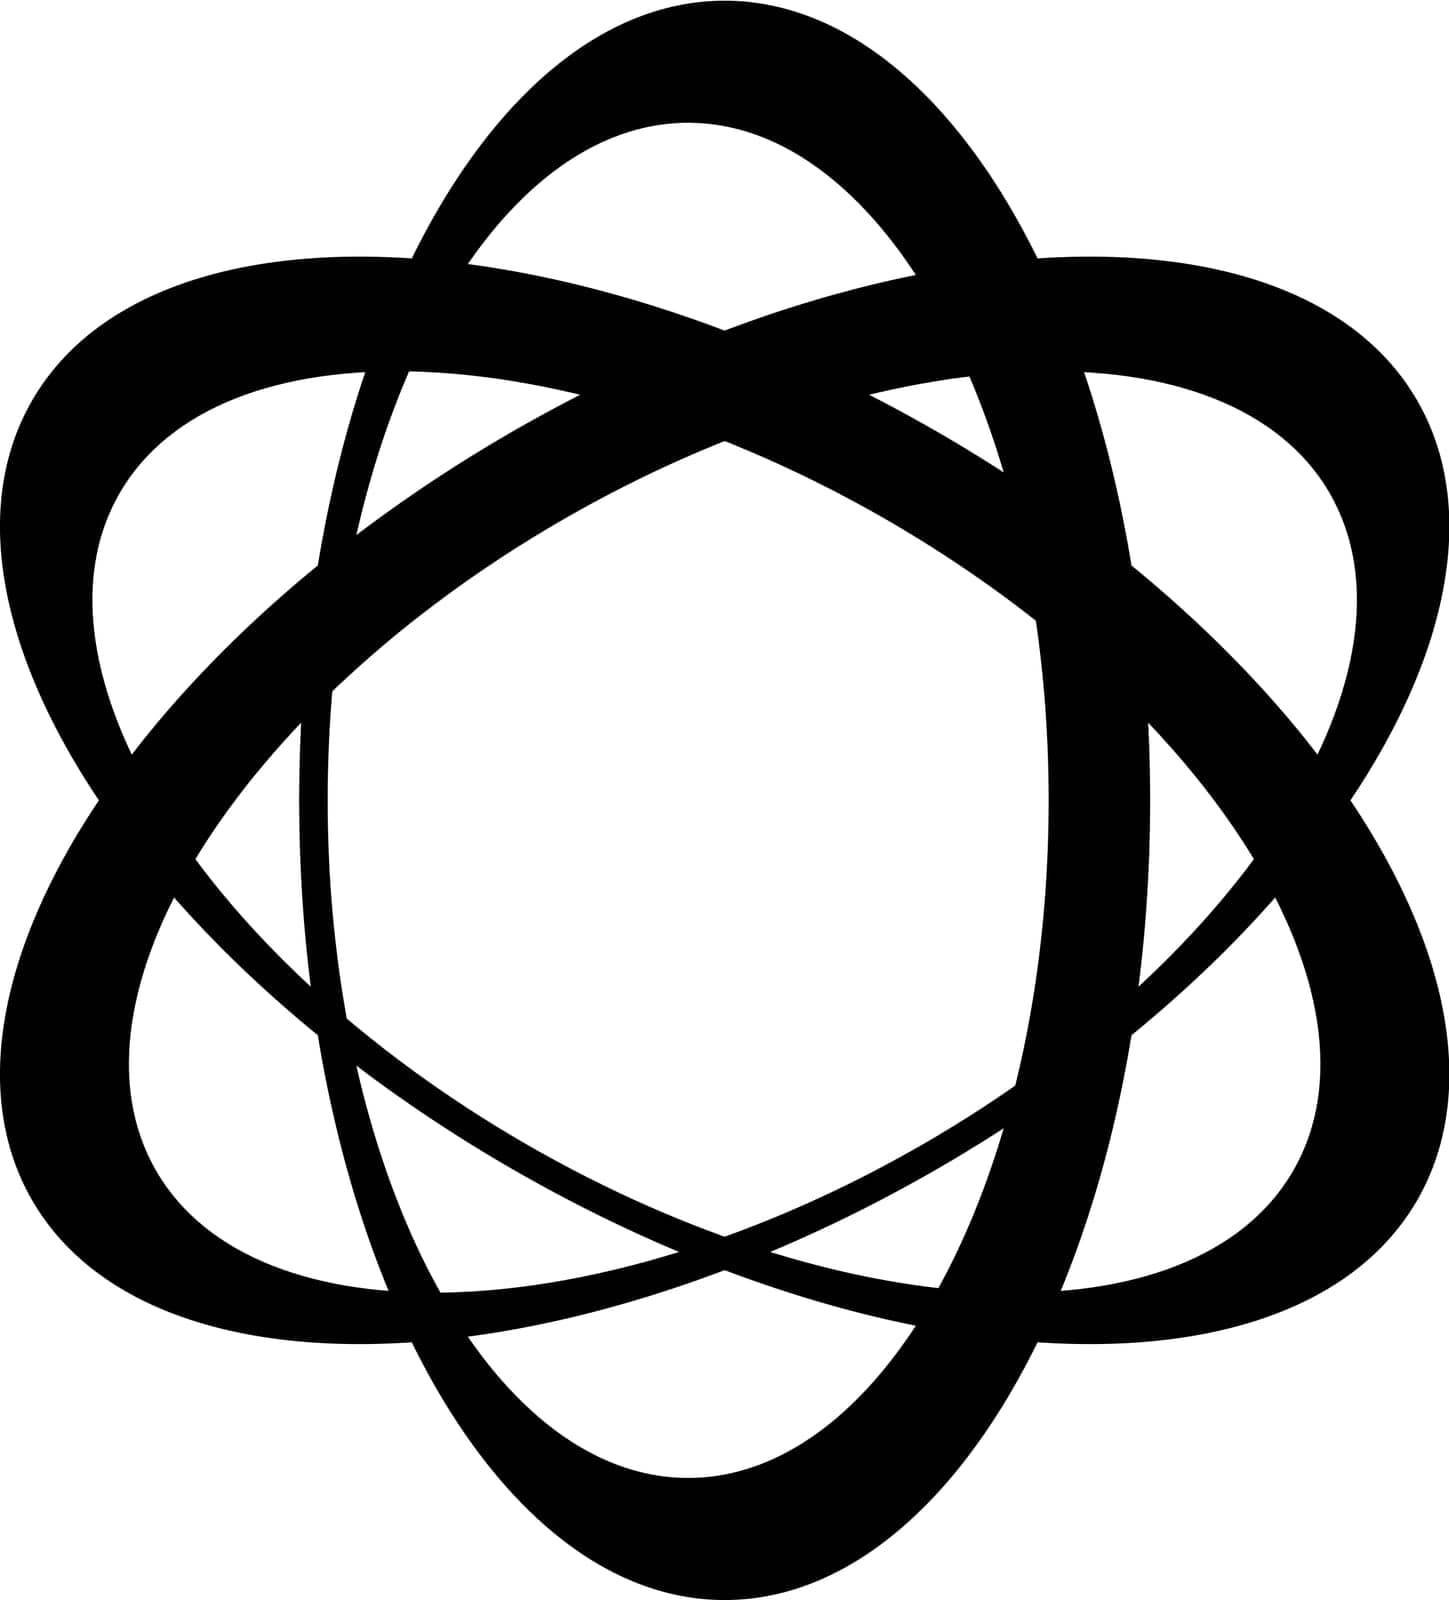 Orbit logo, three elipse displaced center, around nucleus concept molecule by koksikoks